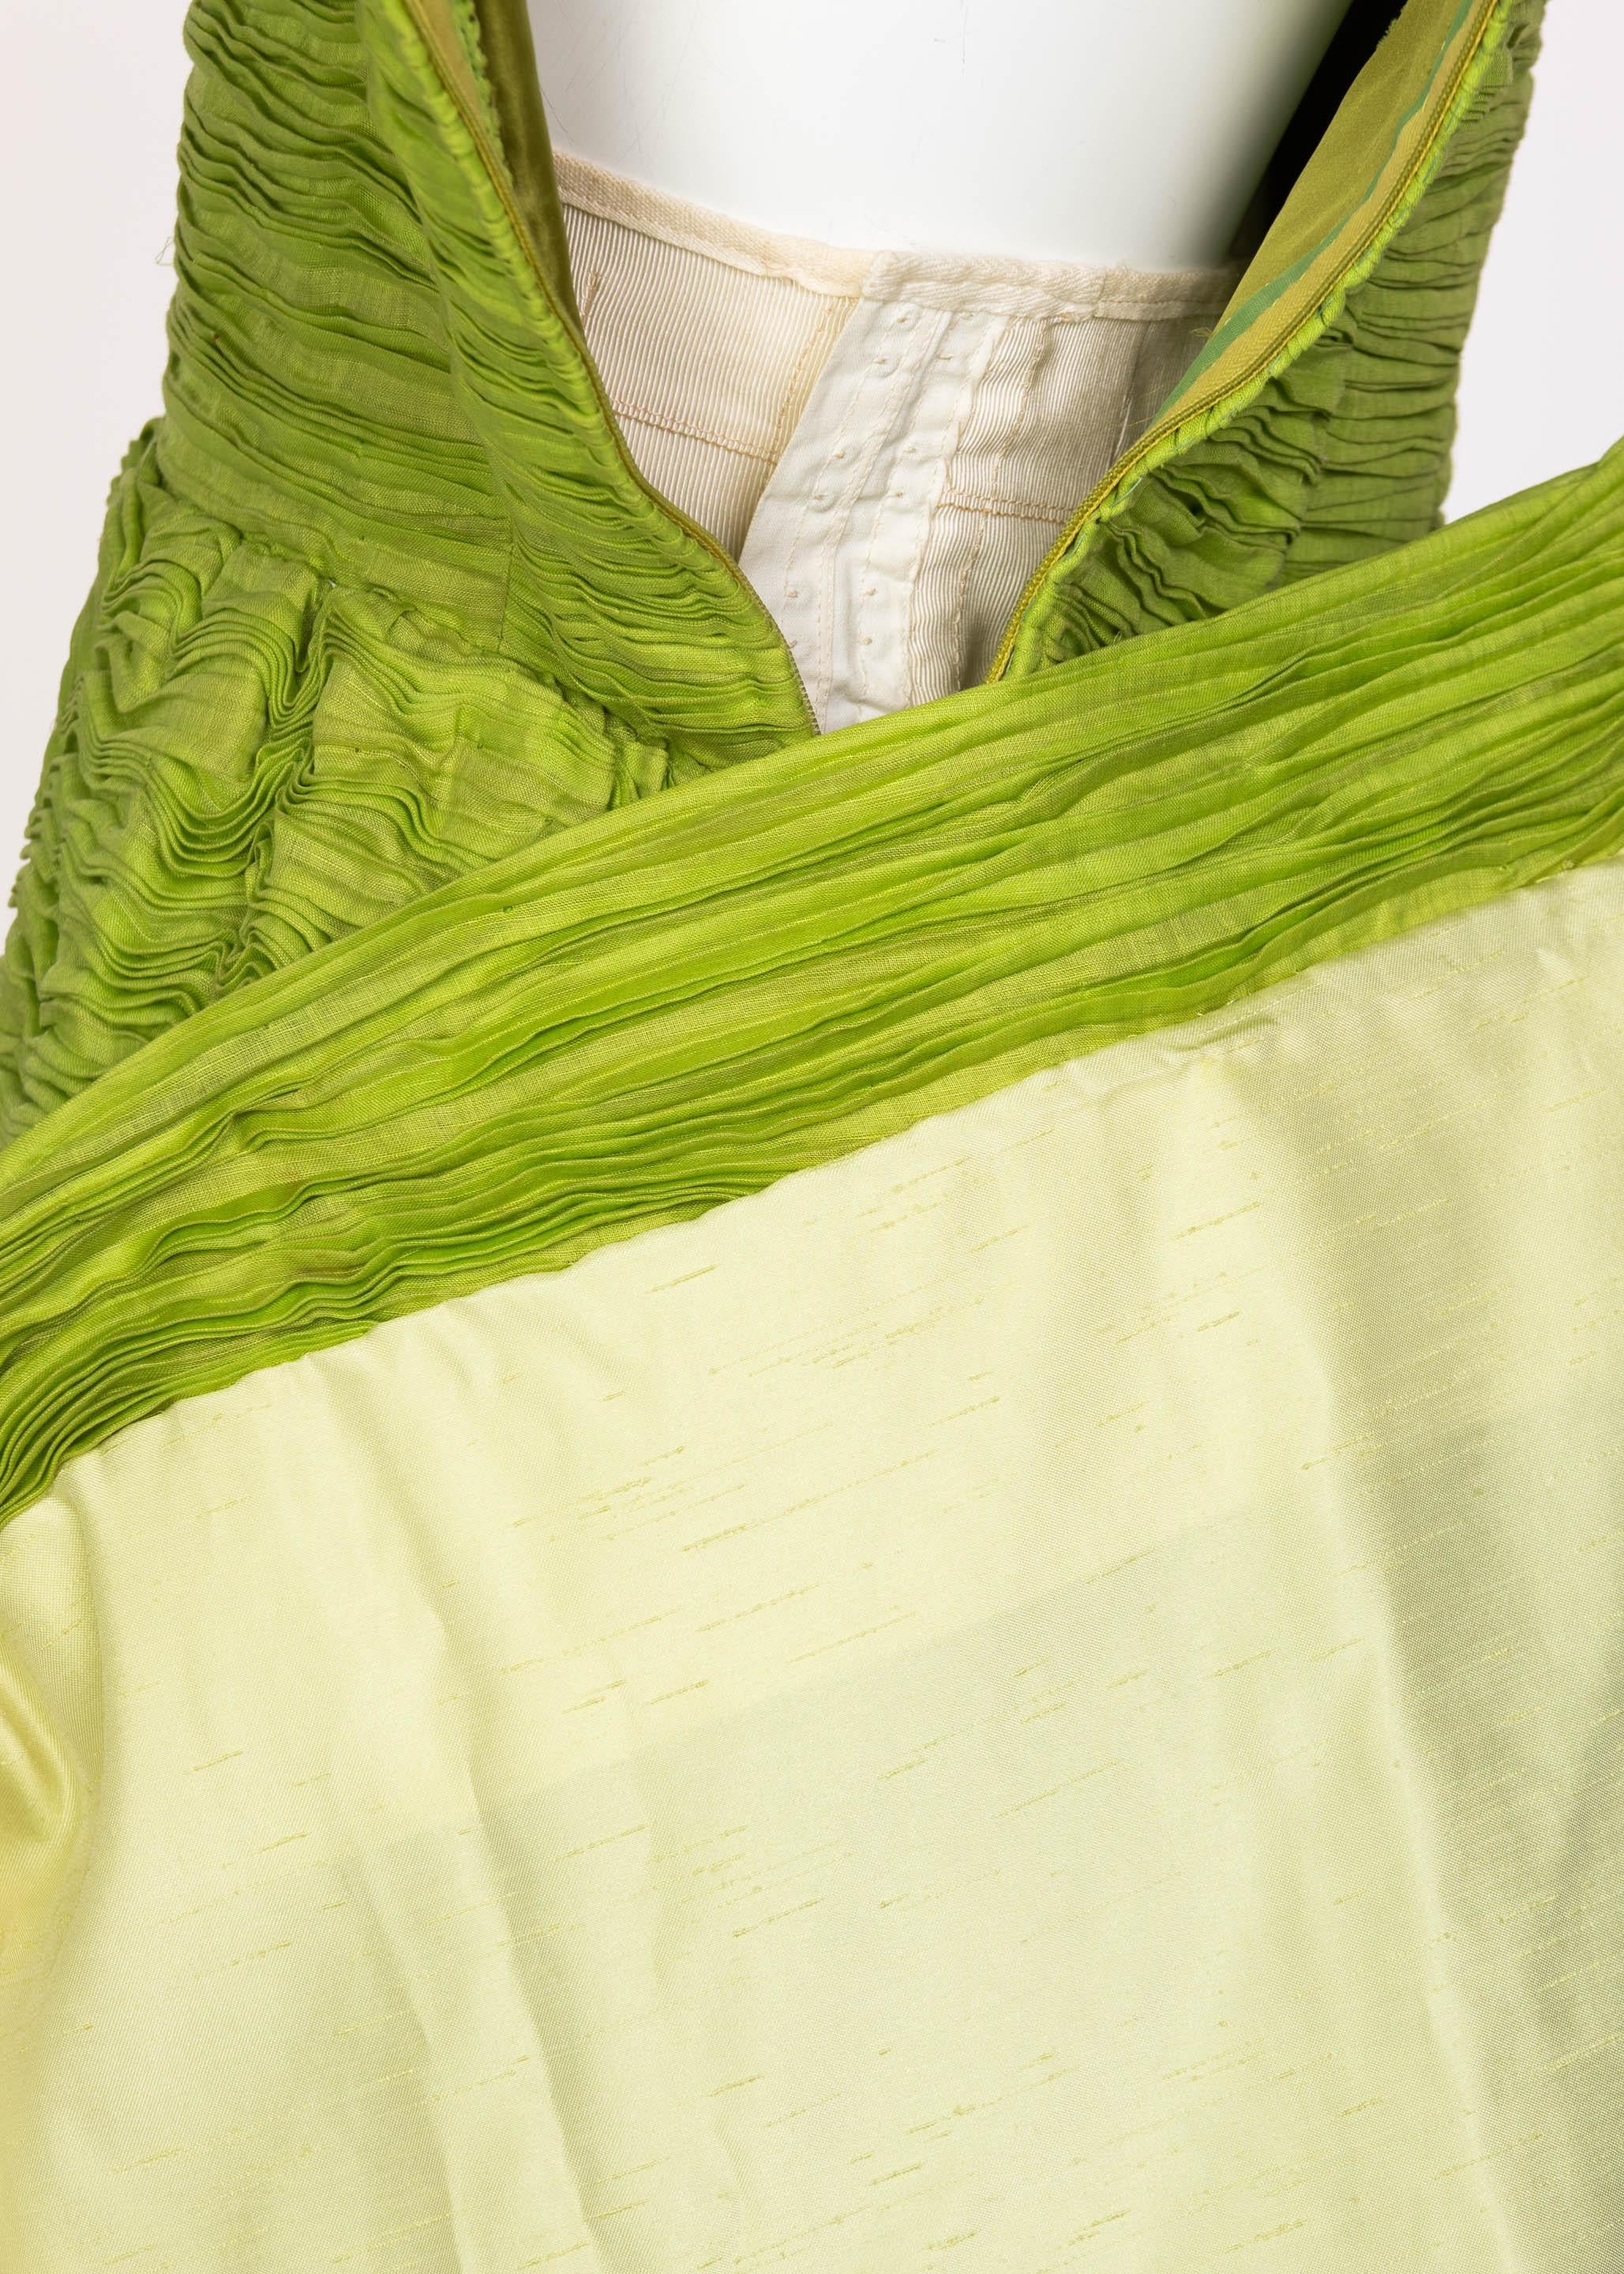 Sybil Connolly Couture, robe en lin plissé vert, années 60 en vente 6